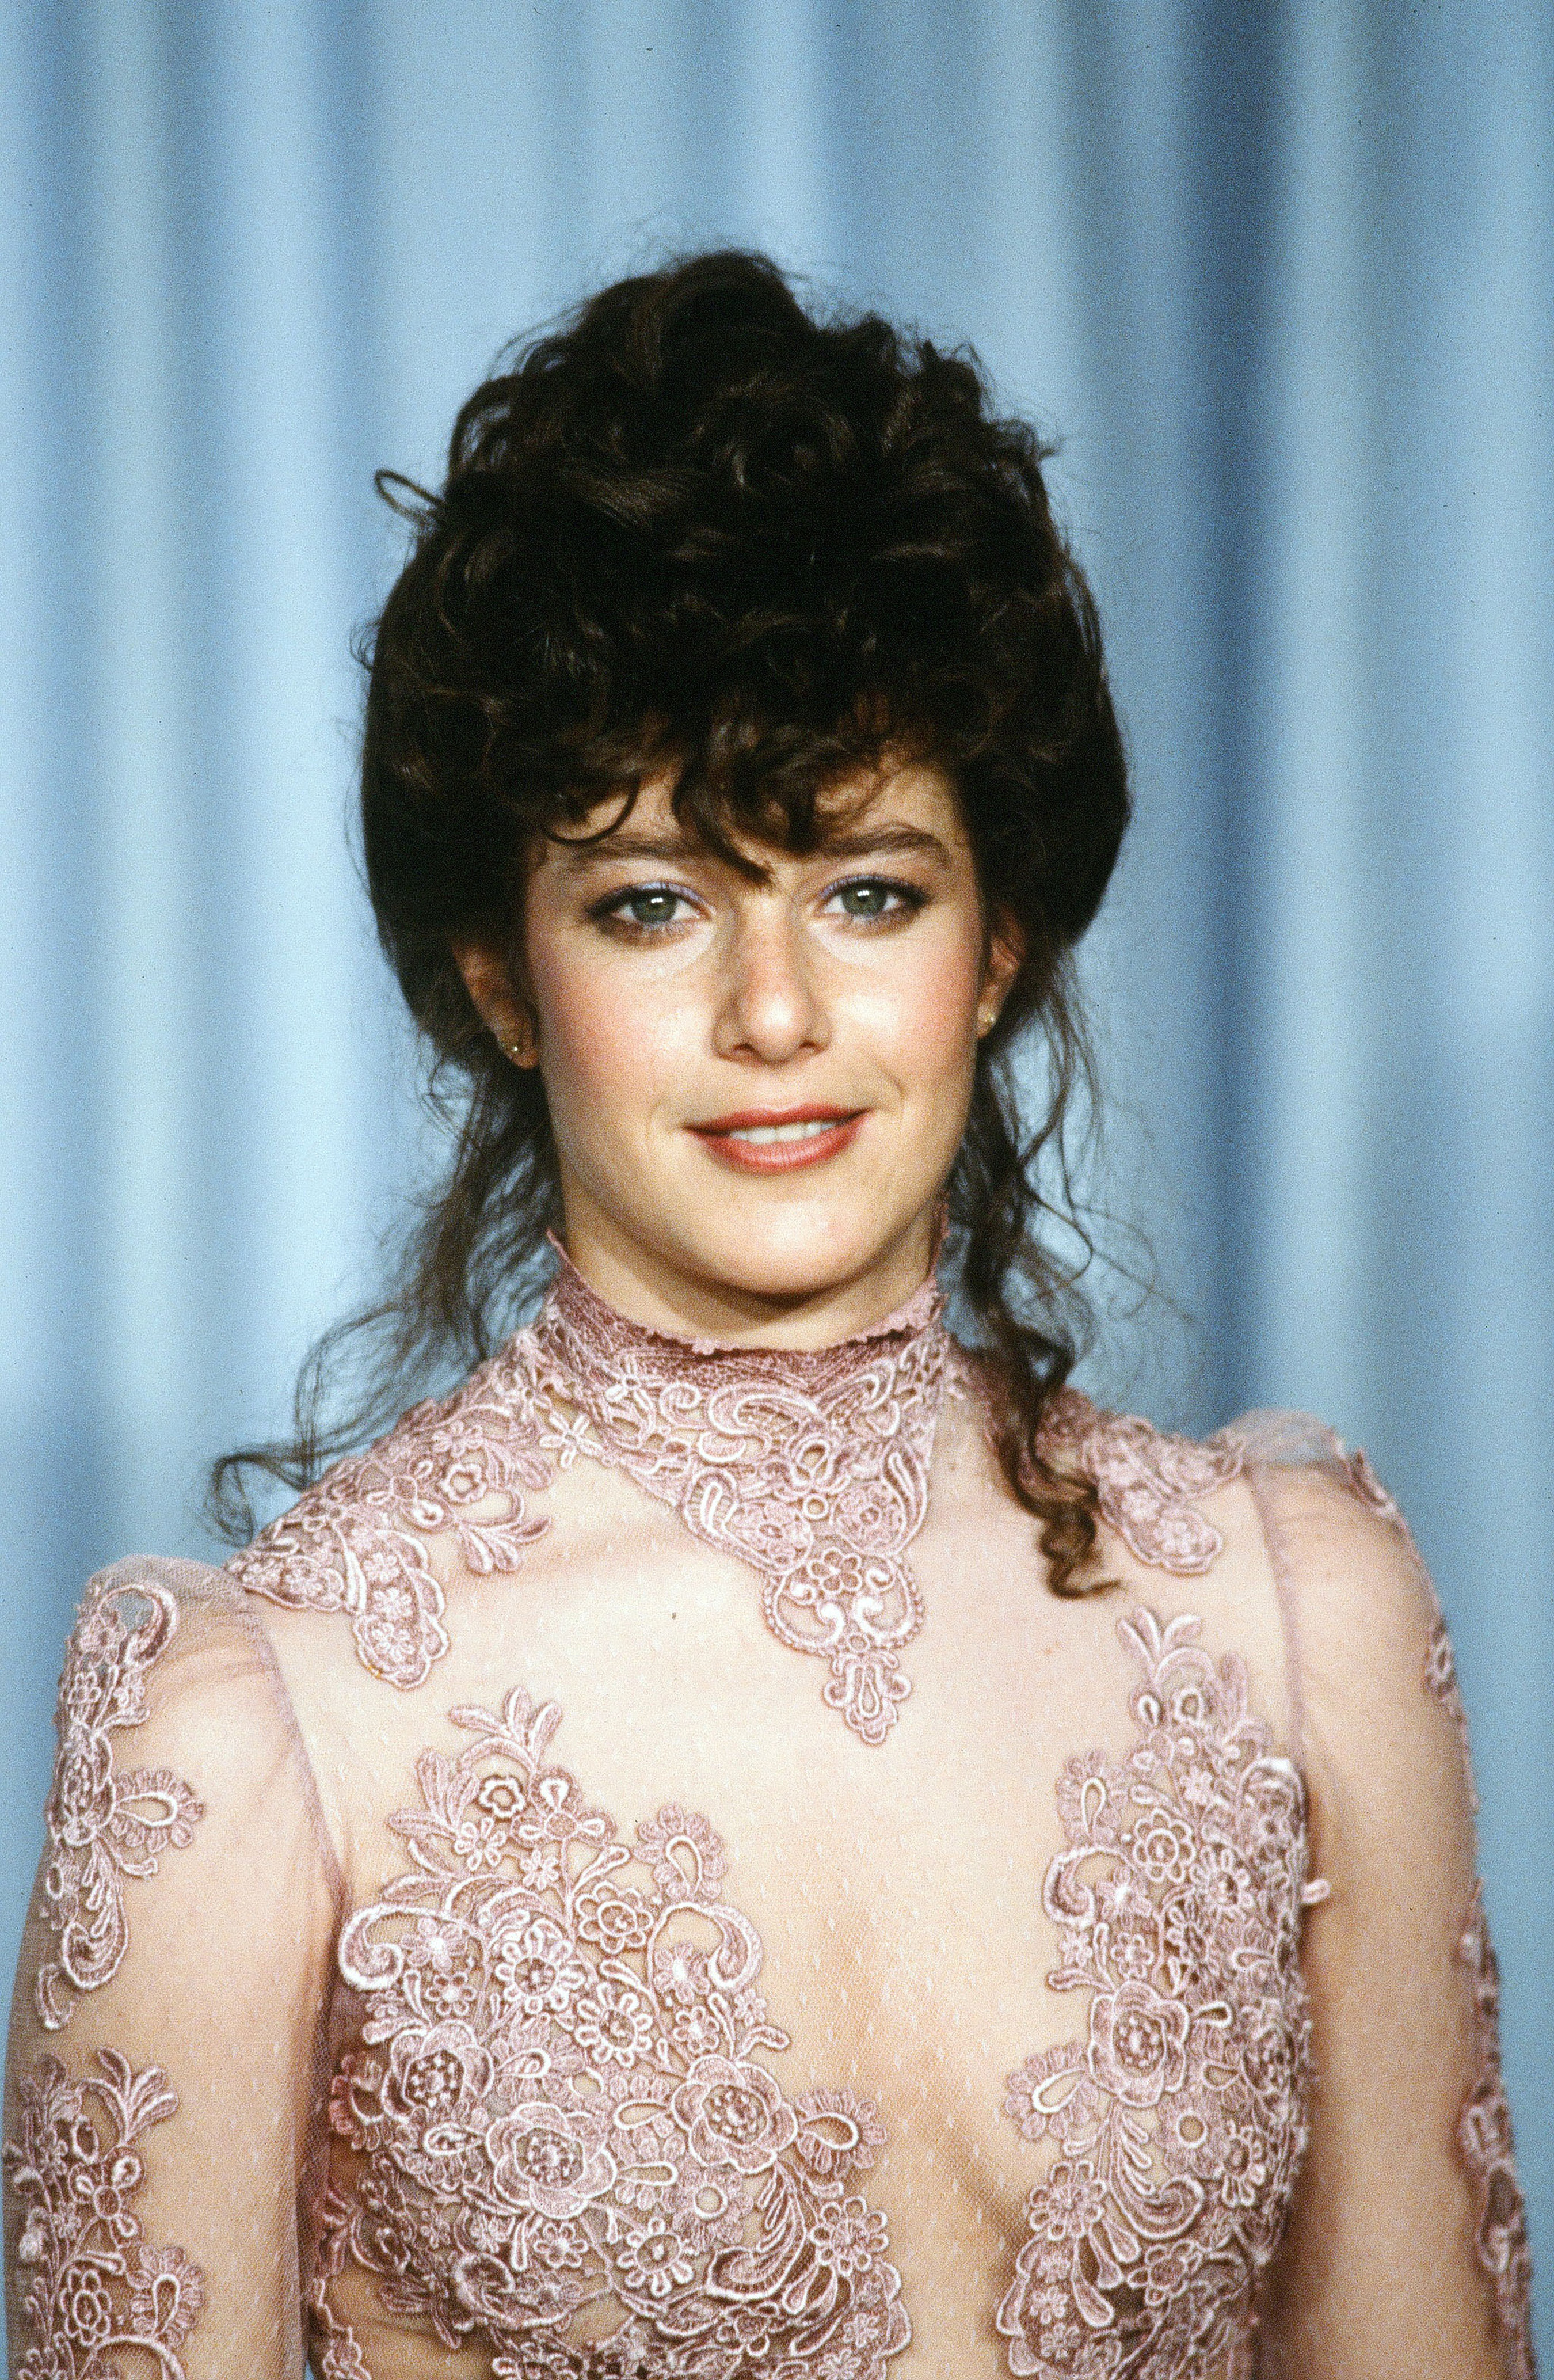 Debra Winger lors de la 54e cérémonie des Oscars le 29 mars 1982 à Los Angeles, Californie. | Source : Getty Images